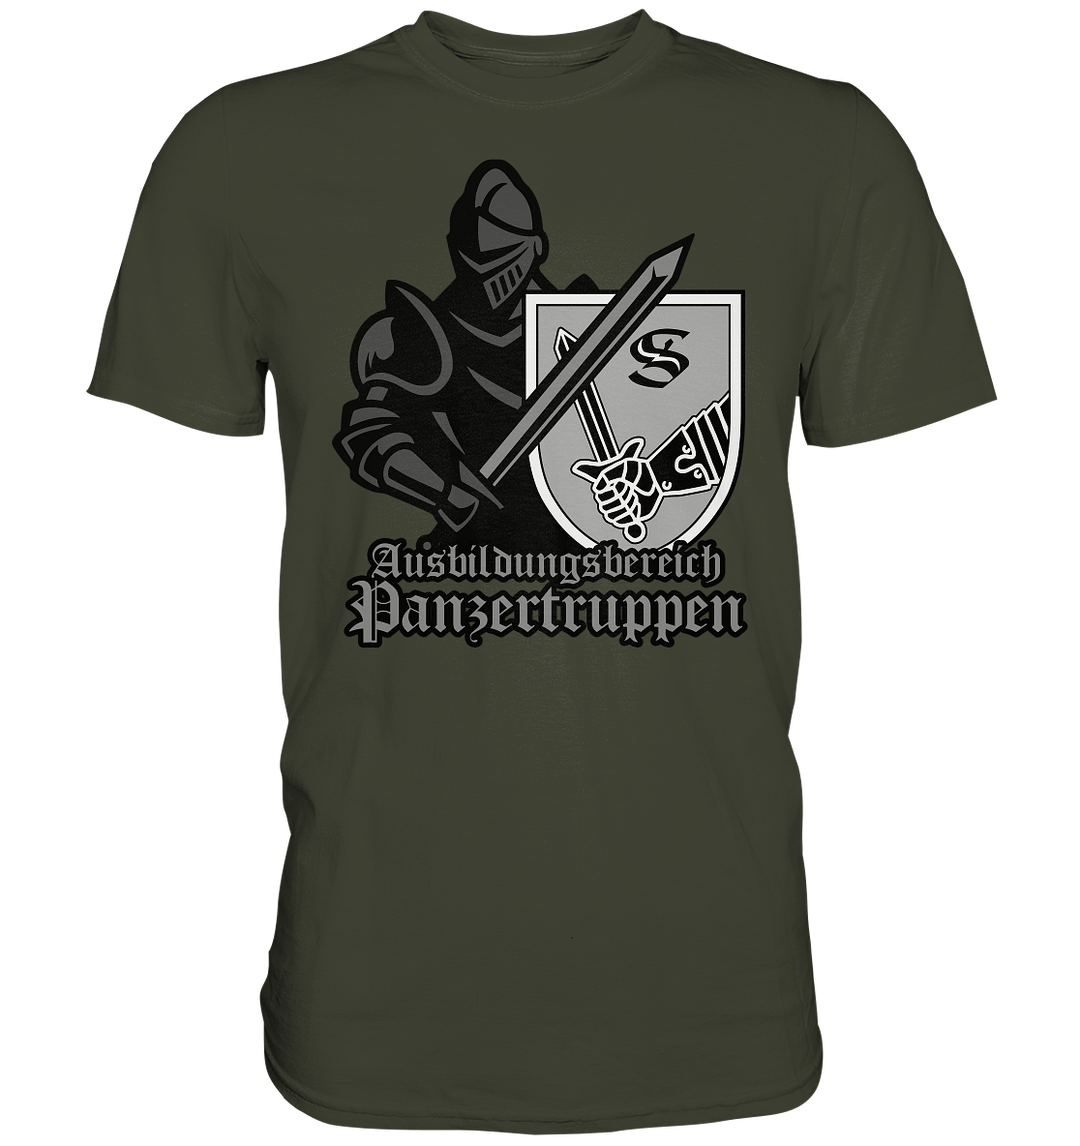 "Ausbildungsbereich Panzertruppen- Ritter" - Premium Shirt